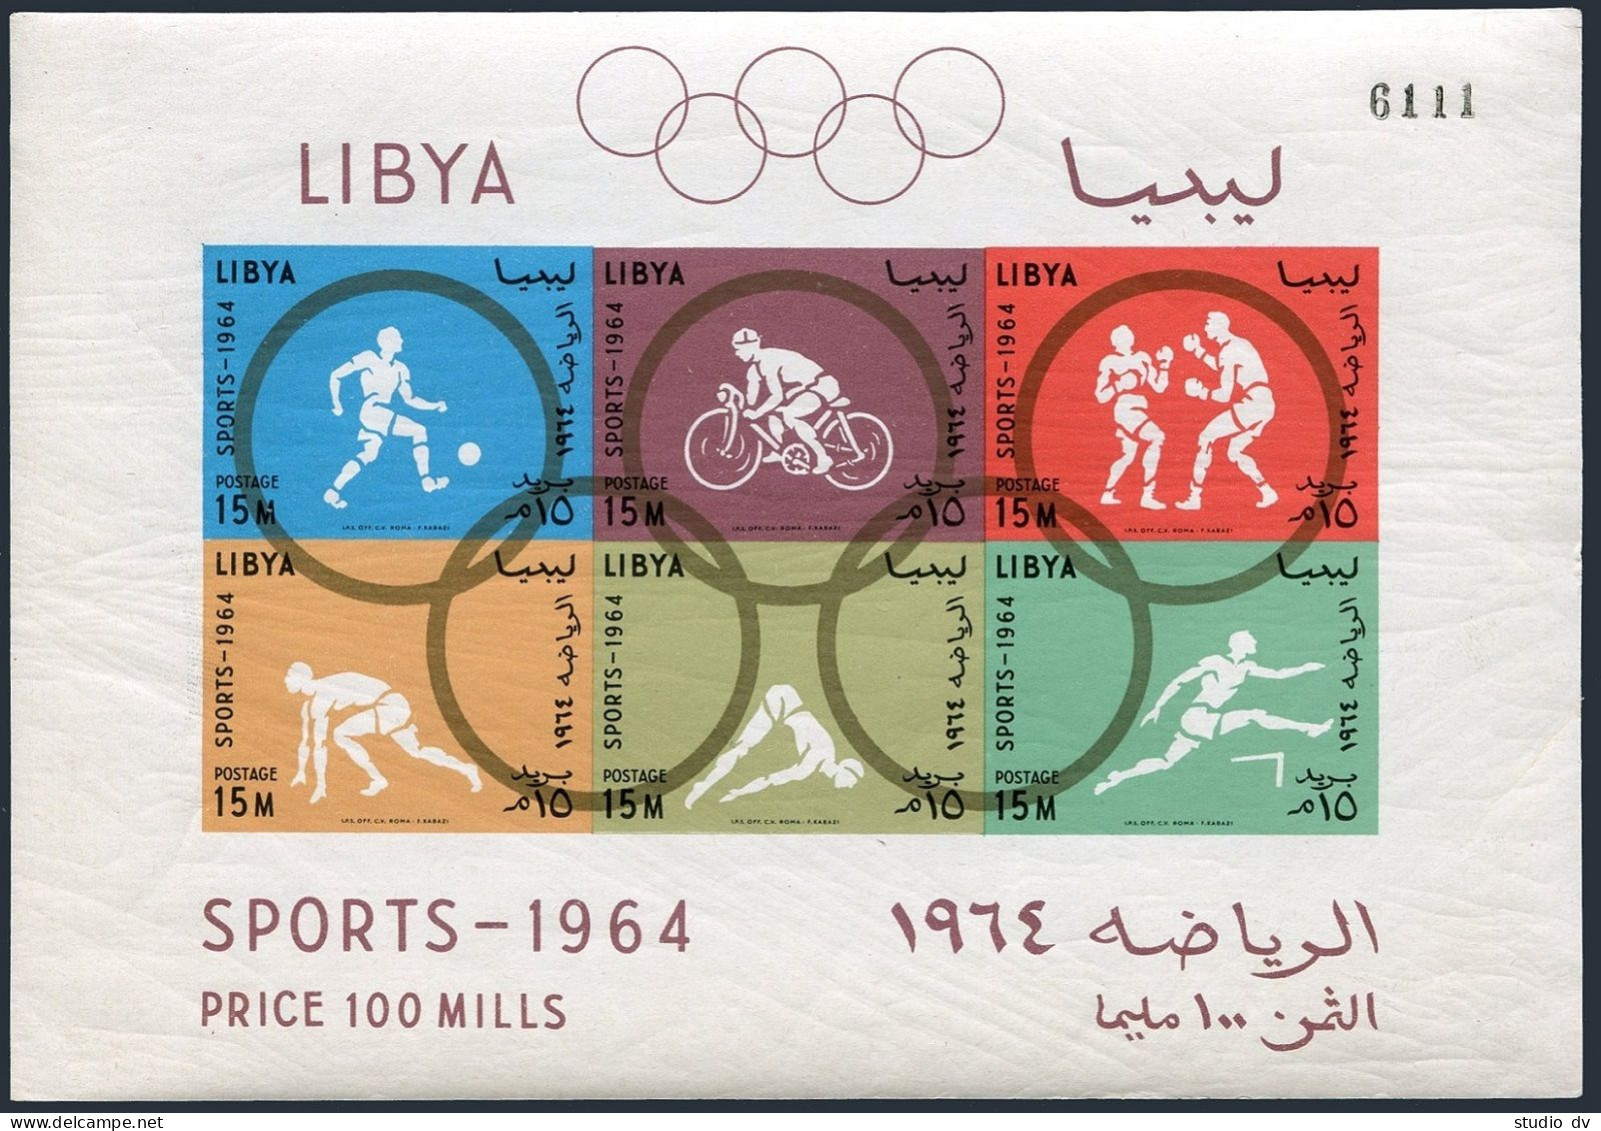 Libya 263b Perf,imperf Sheets,MNH. Olympics Tokyo-1964.Soccer,Bicycling,Boxing, - Libyen